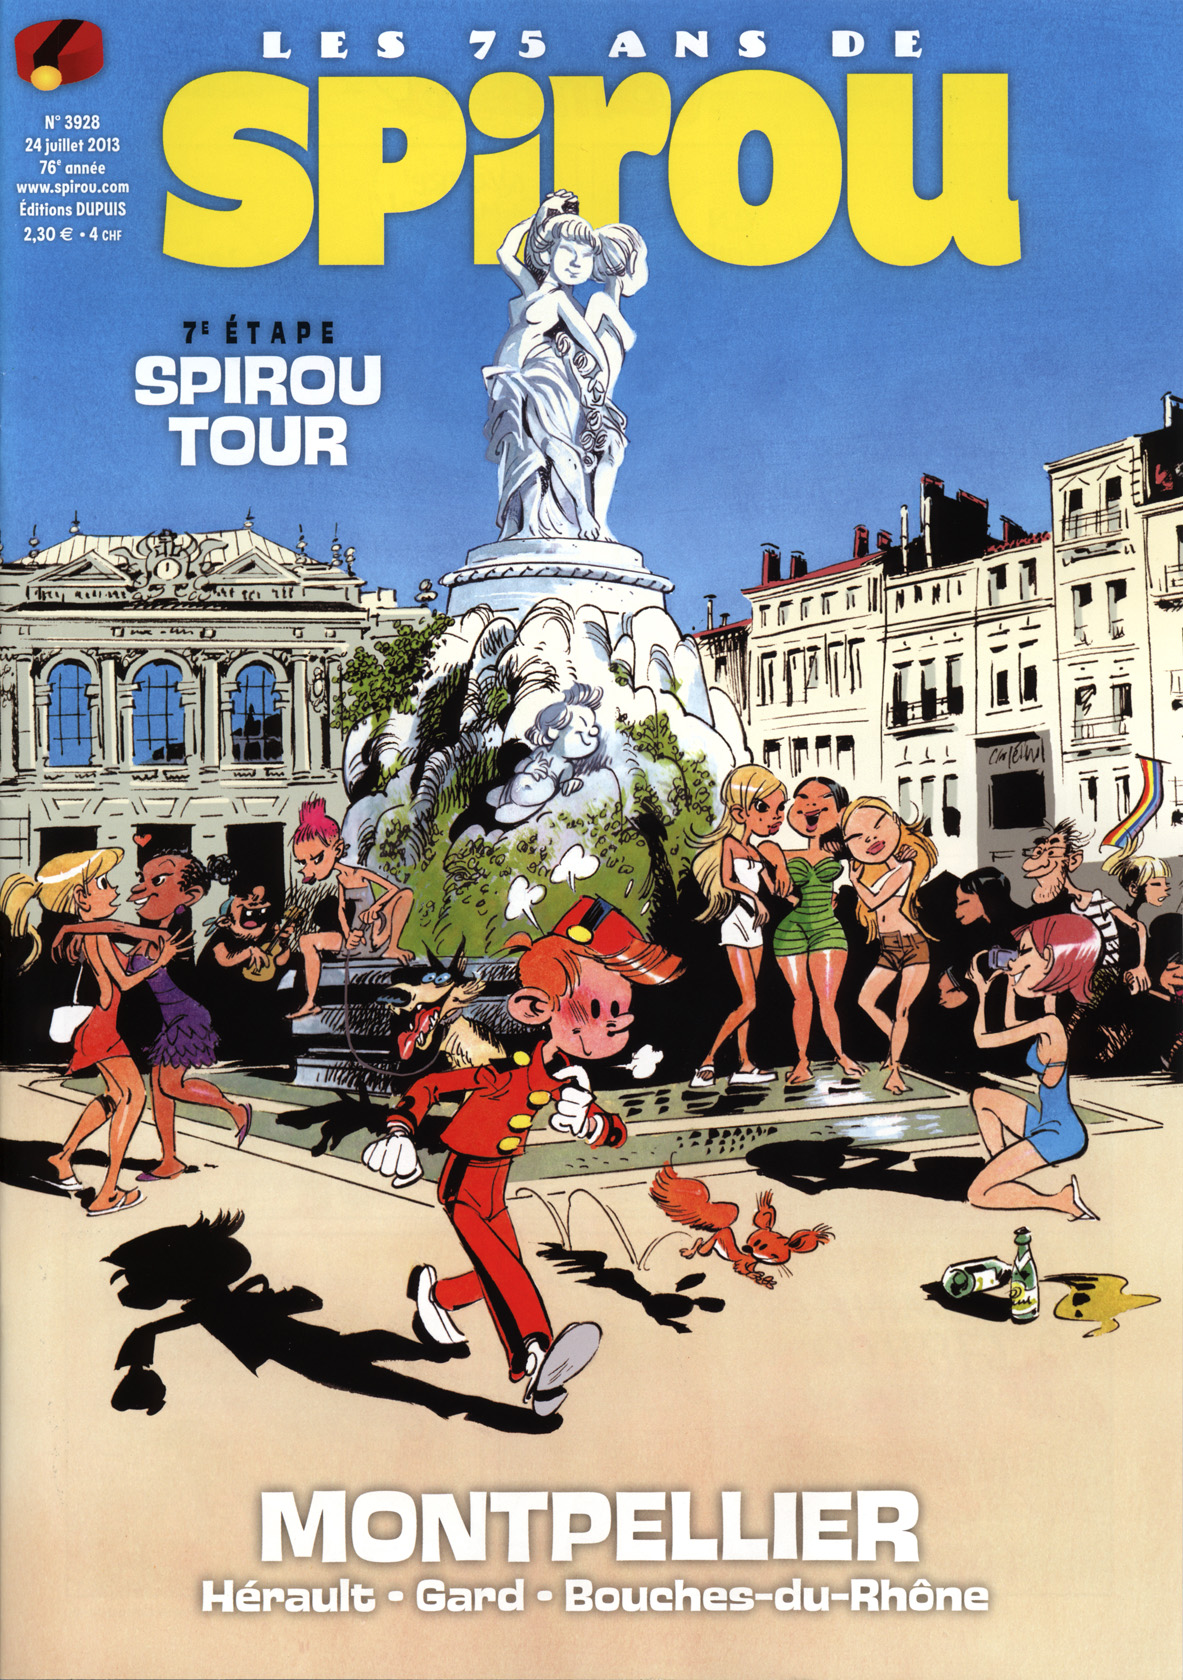 Spirou Tour: Montpellier